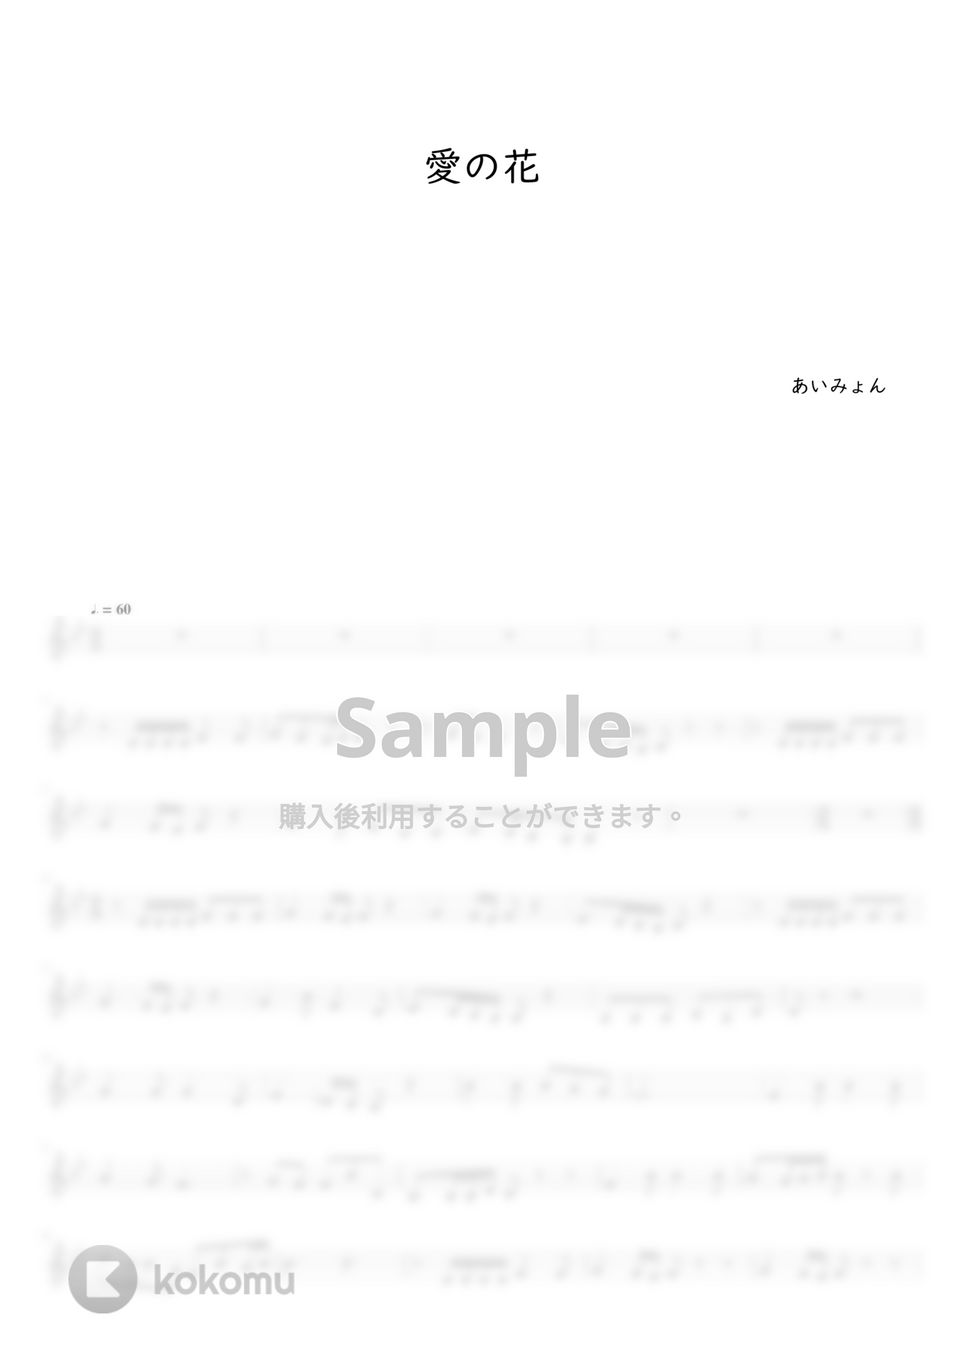 あいみょん - 愛の花 (オカリナAC用メロディー譜) by もりたあいか